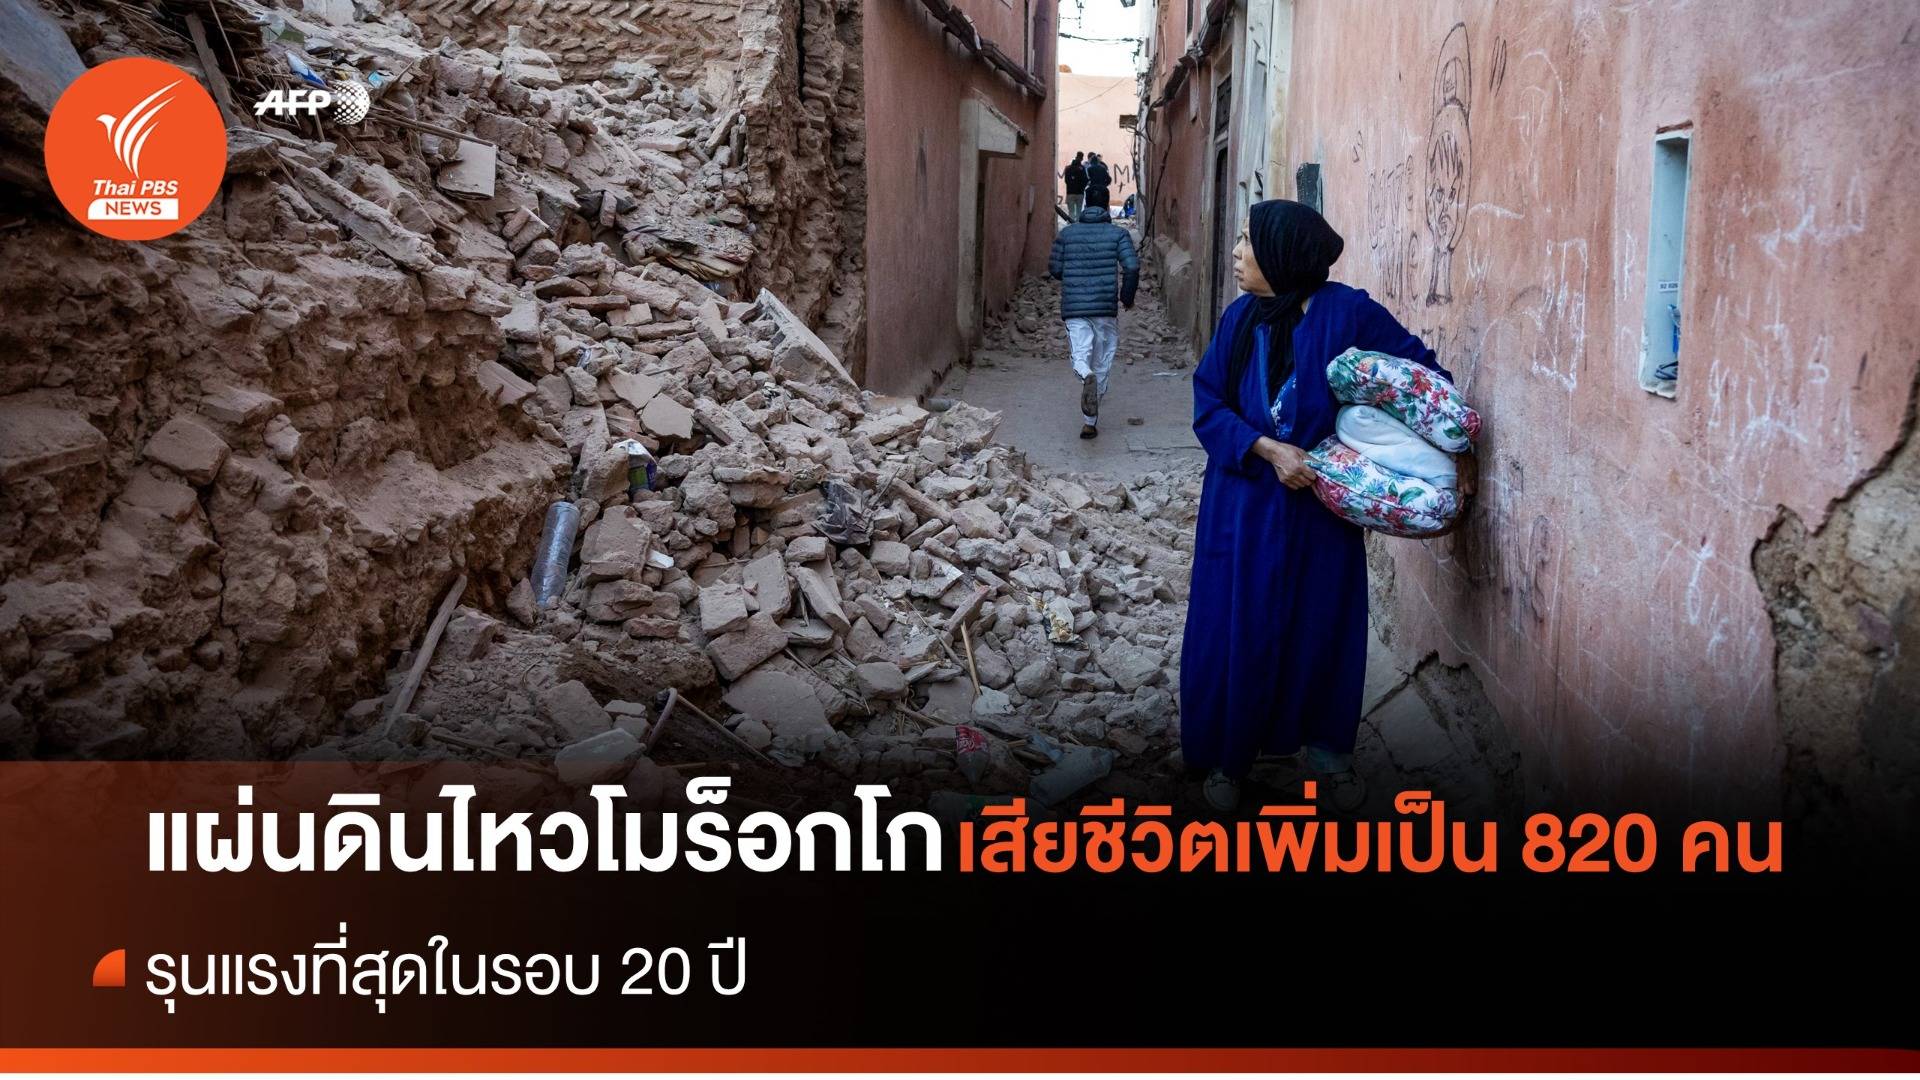 "แผ่นดินไหว" โมร็อกโก รุนแรงสุดในรอบ 20 ปี เสียชีวิตเพิ่มเป็น 820 คน